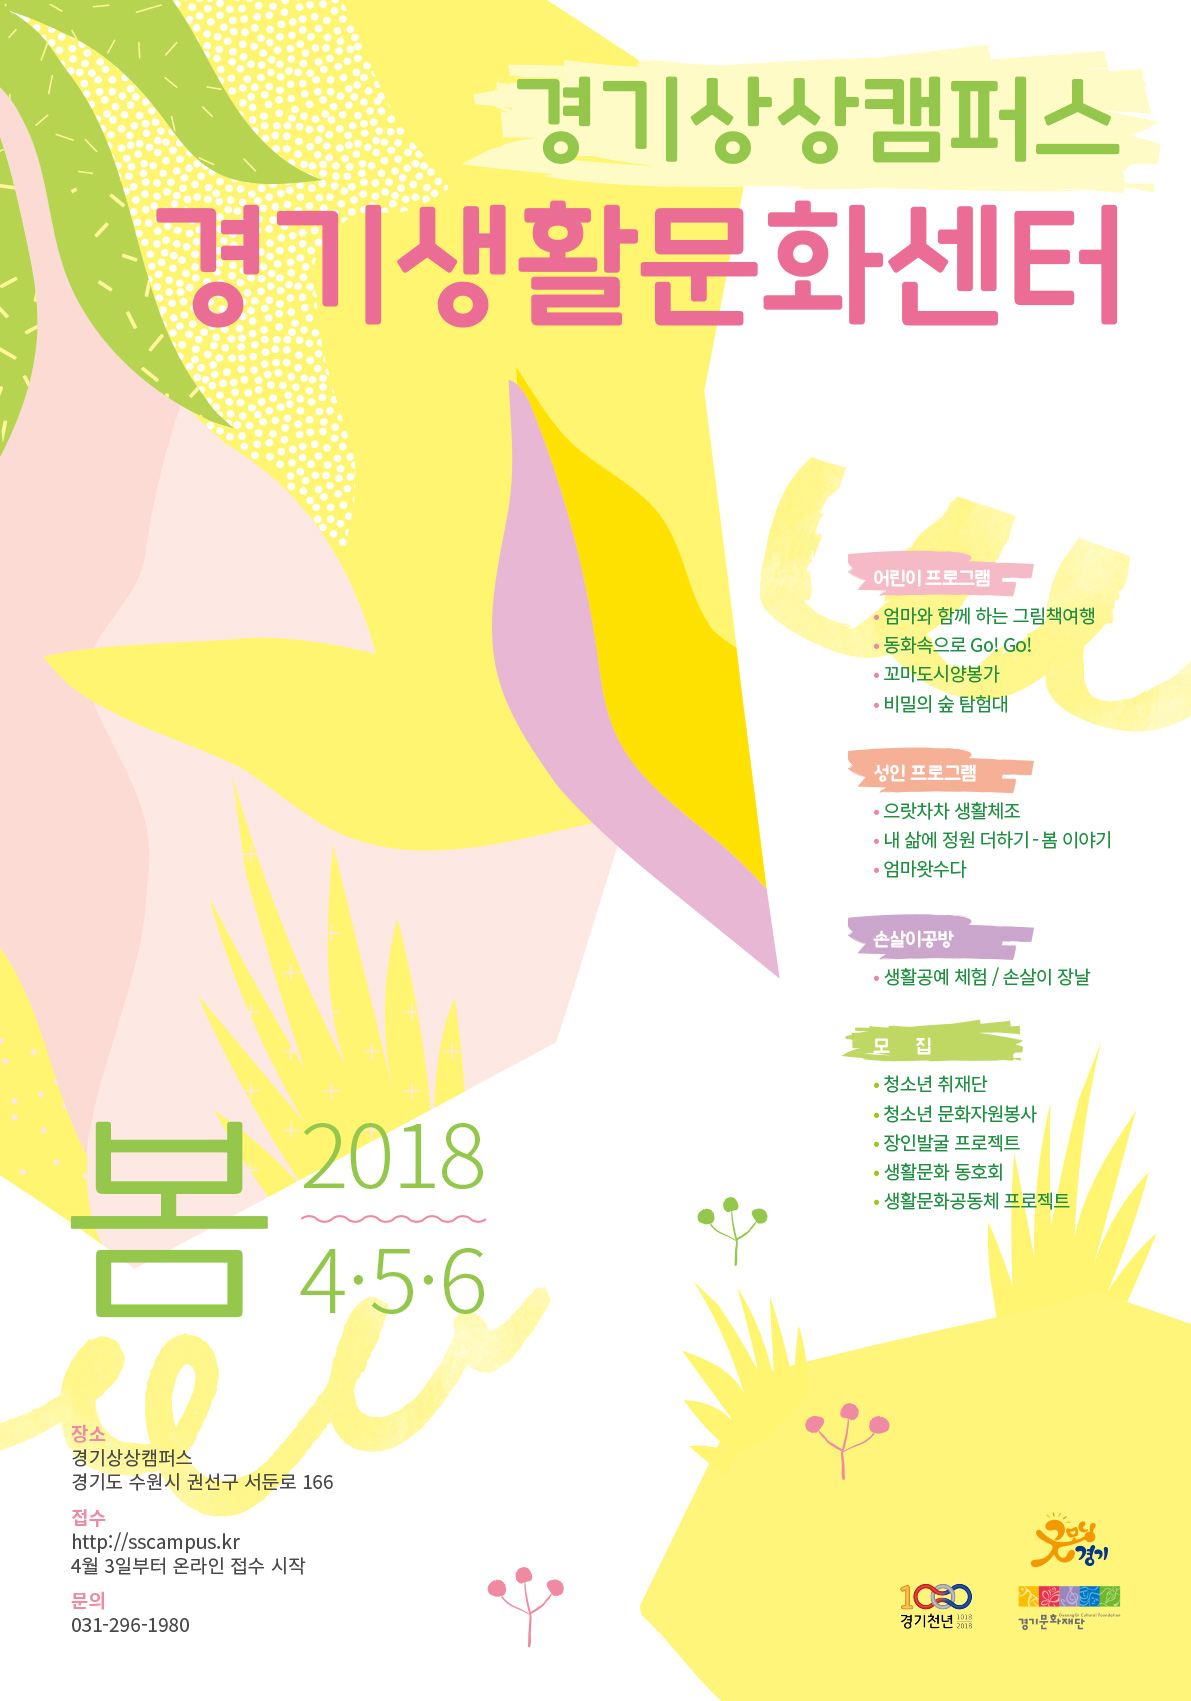 2018 Spring Programs of Gyeonggi Living Culture Center of Gyeonggi Sangsang Campus